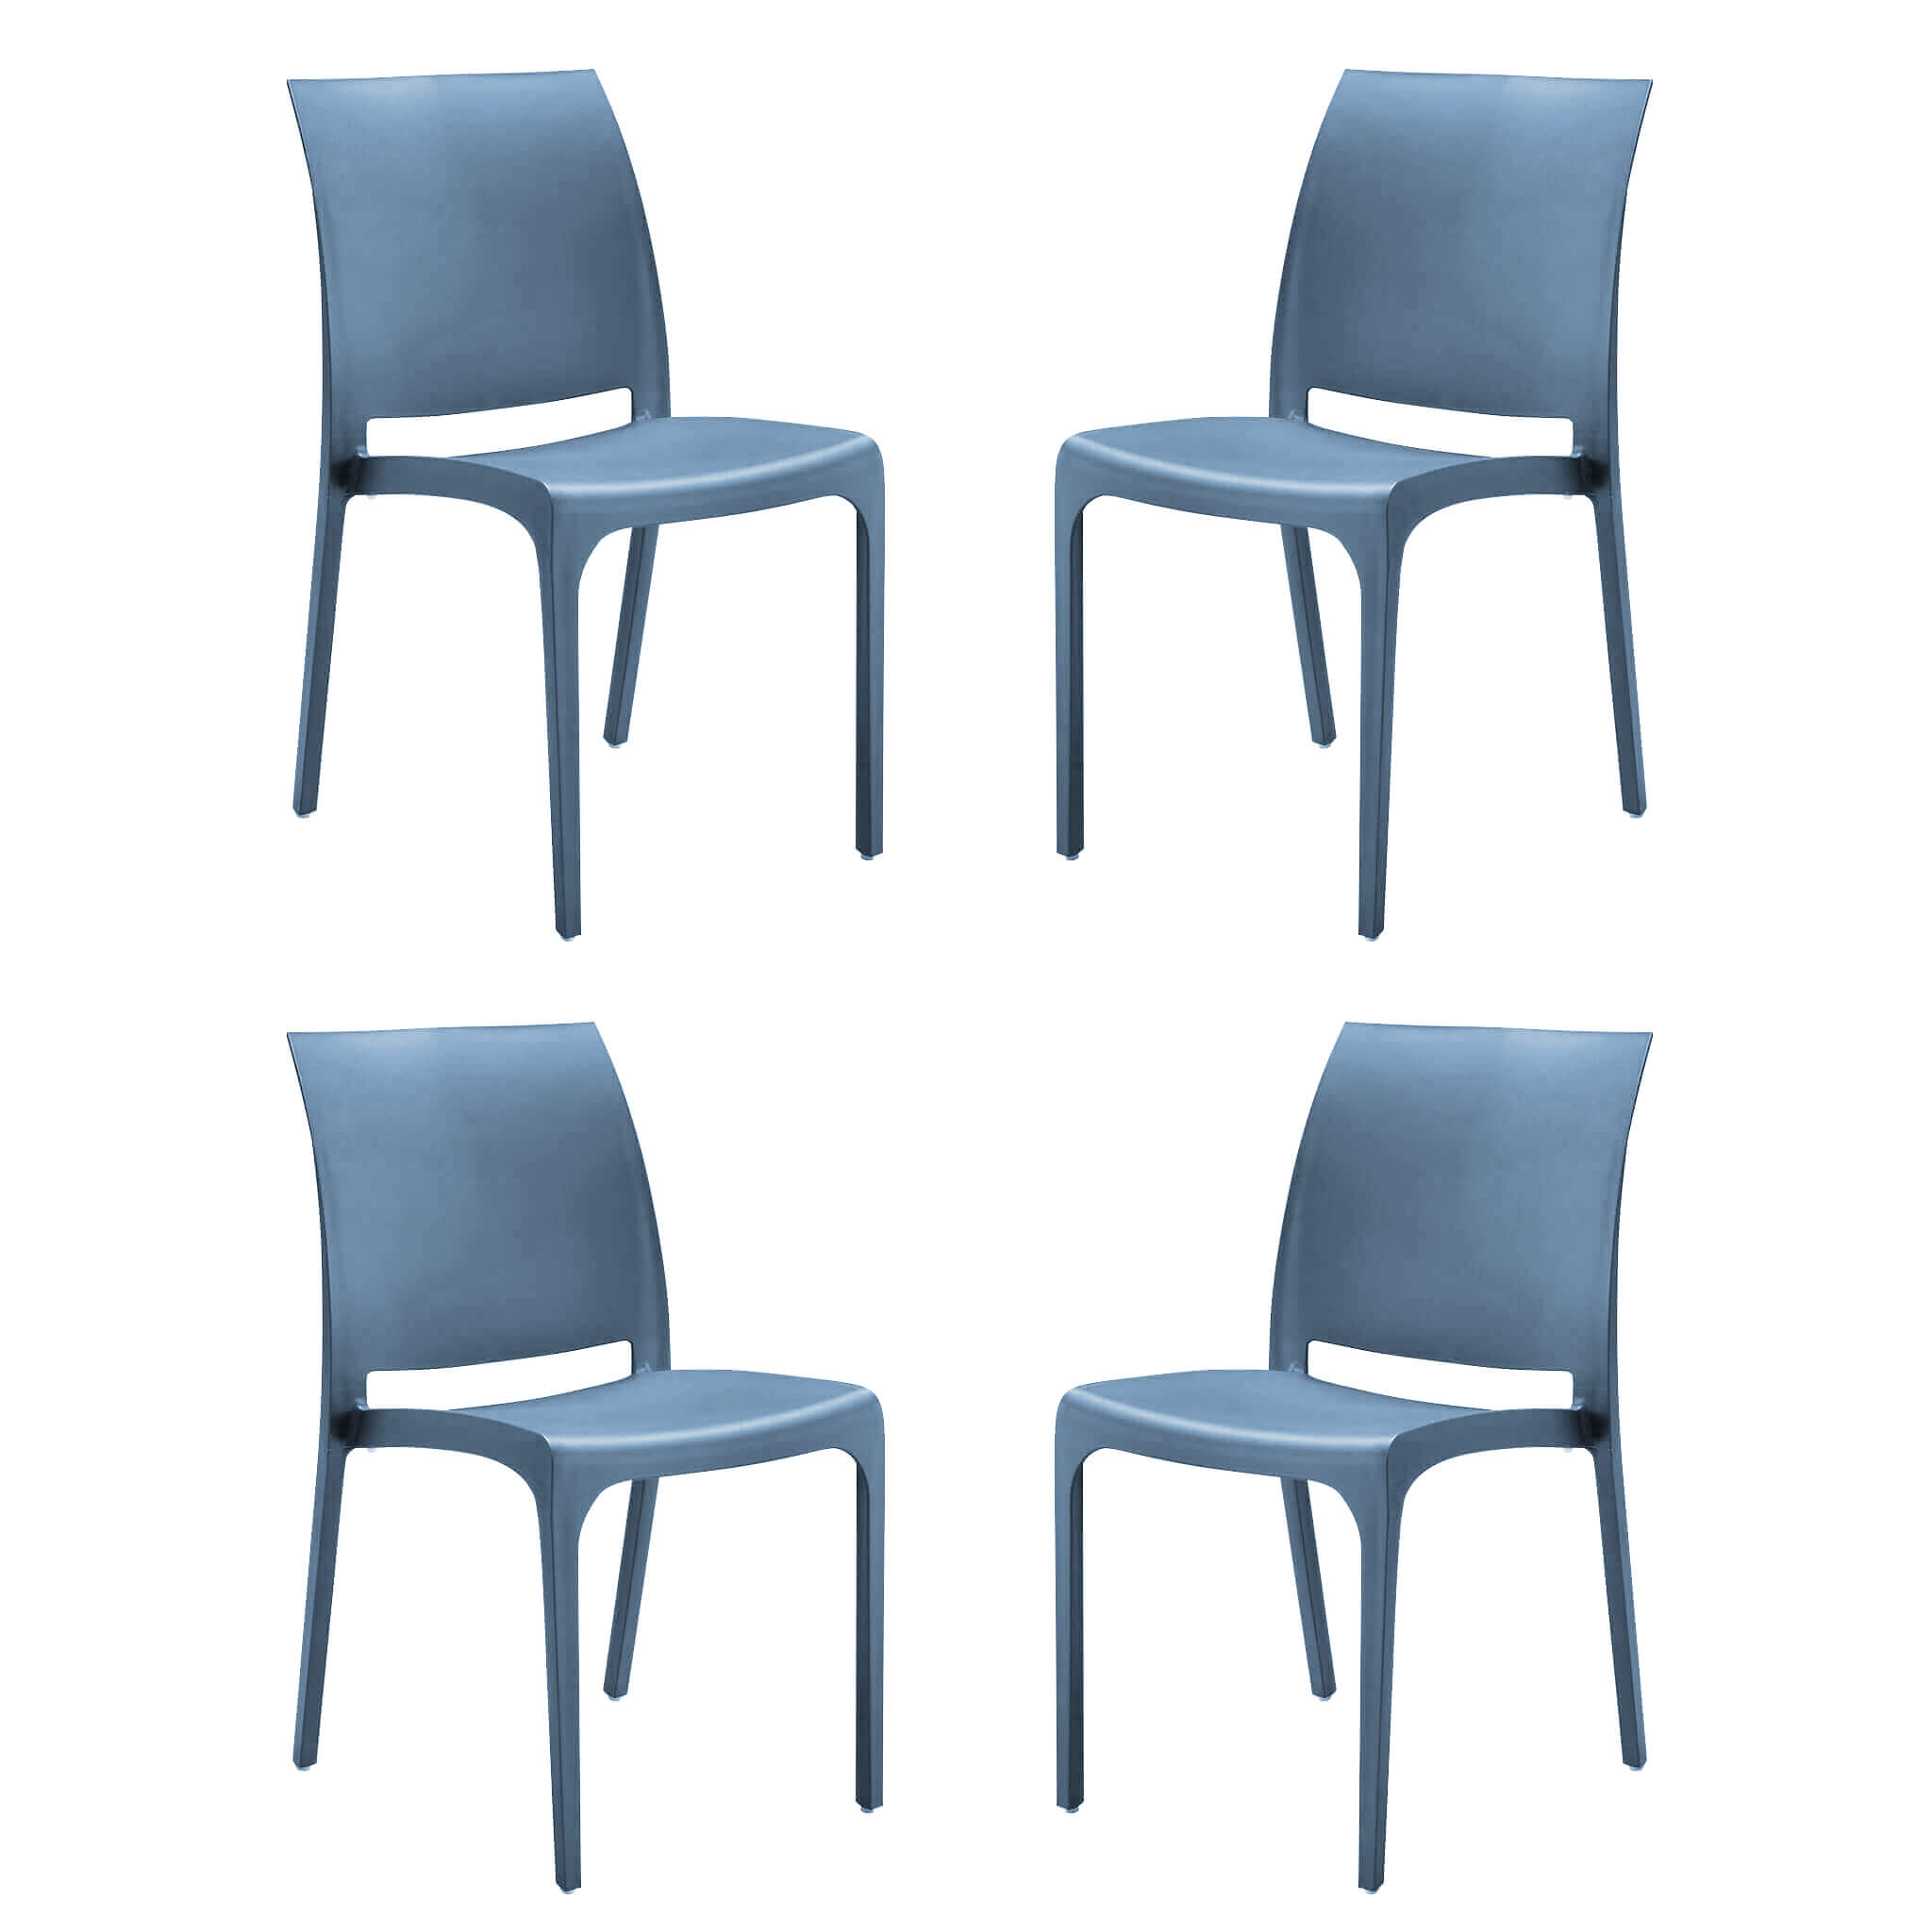 Milani Home set di 4 sedie poltrone da giardino in plastica design moderno colorata Blu Blu 46 x 80 x 54 cm